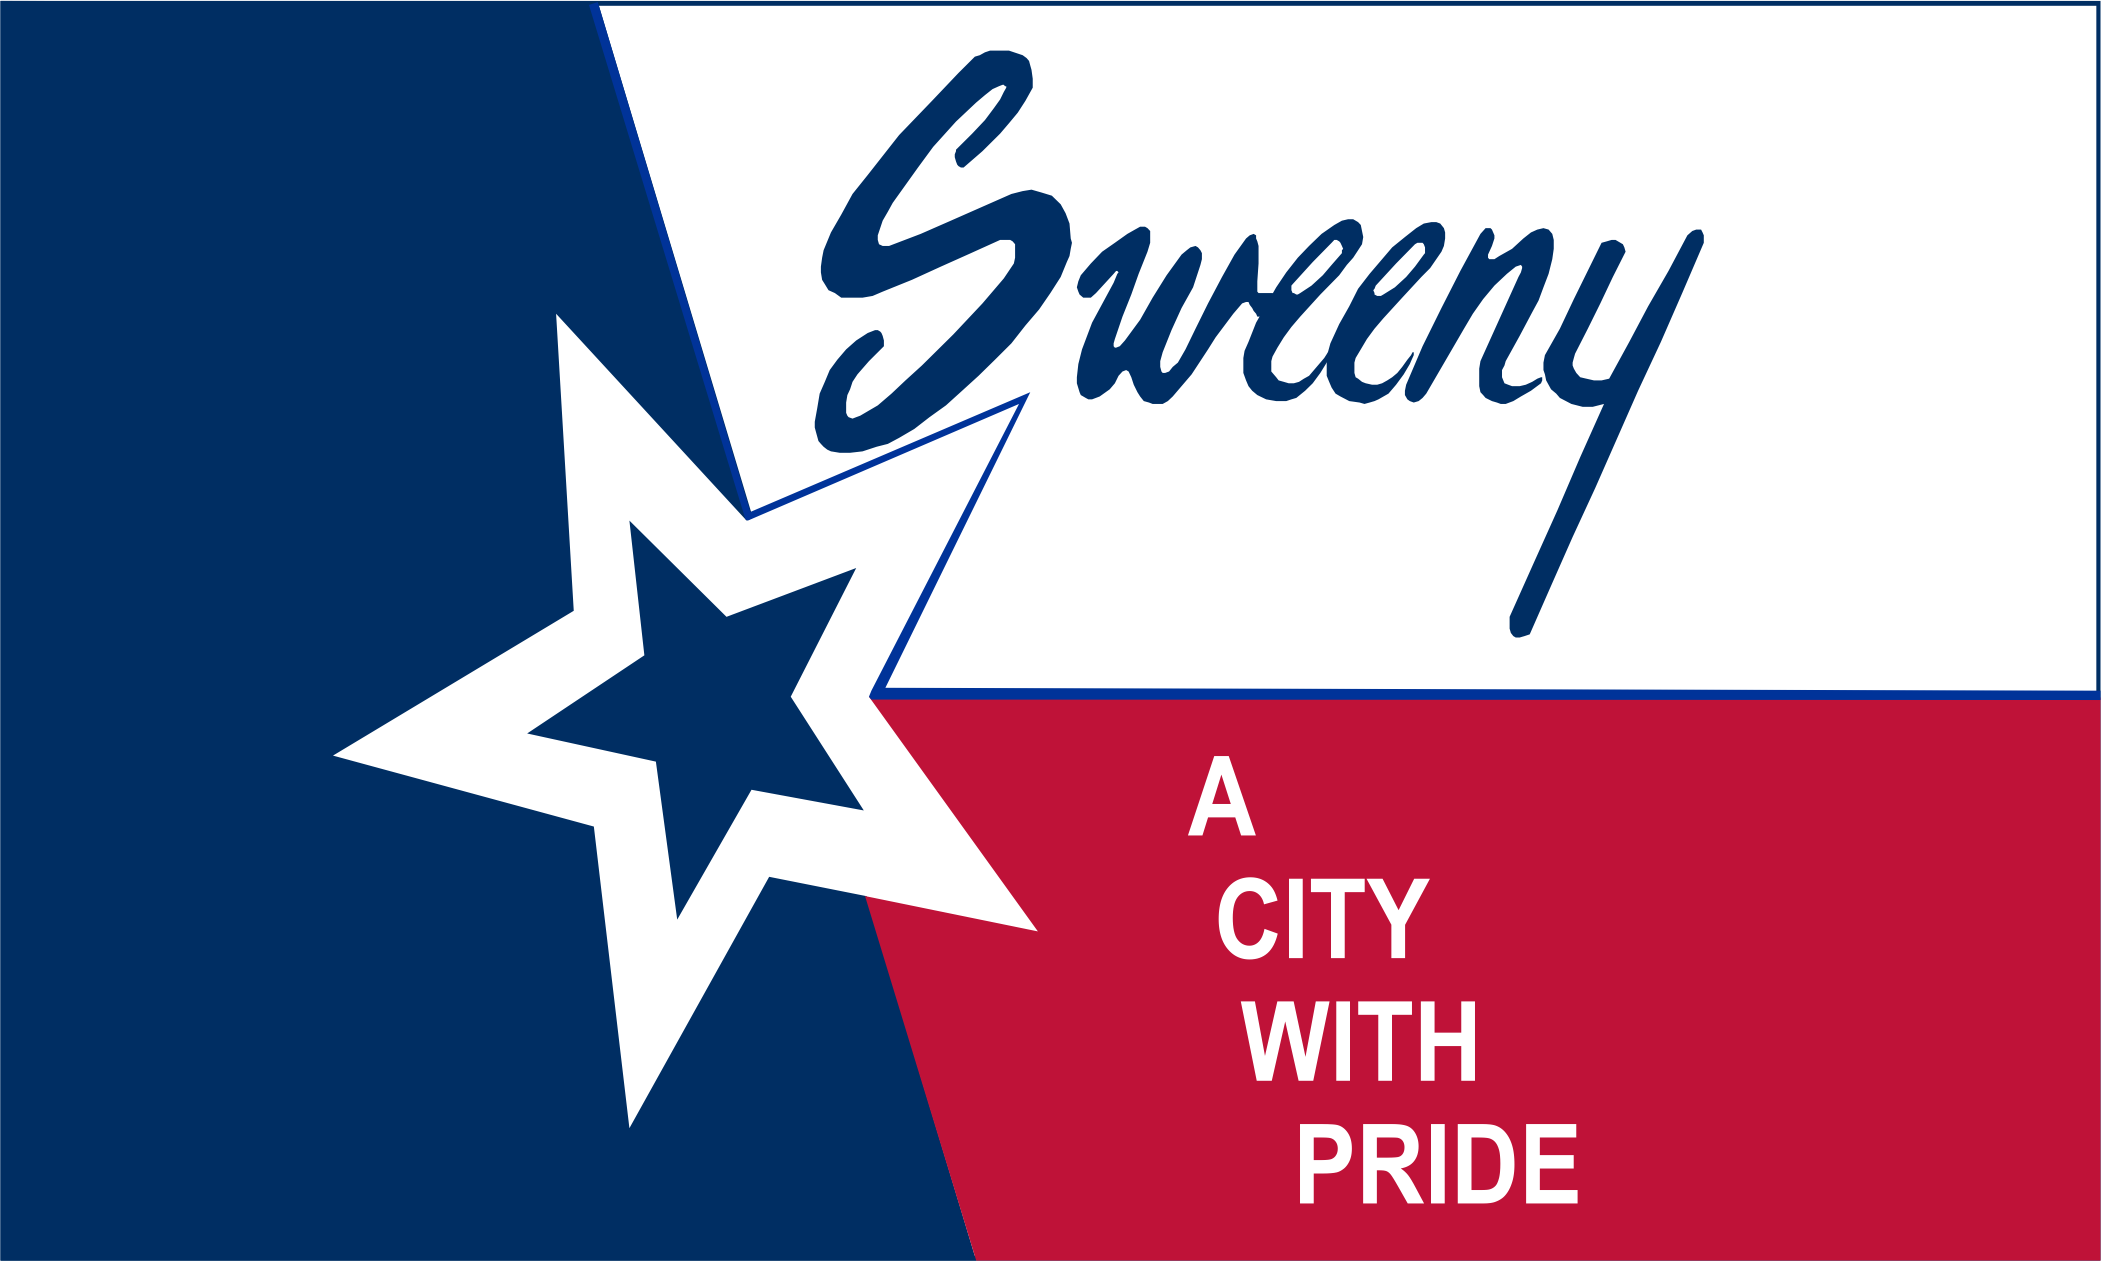 CITY OF SWEENY, TX Logo